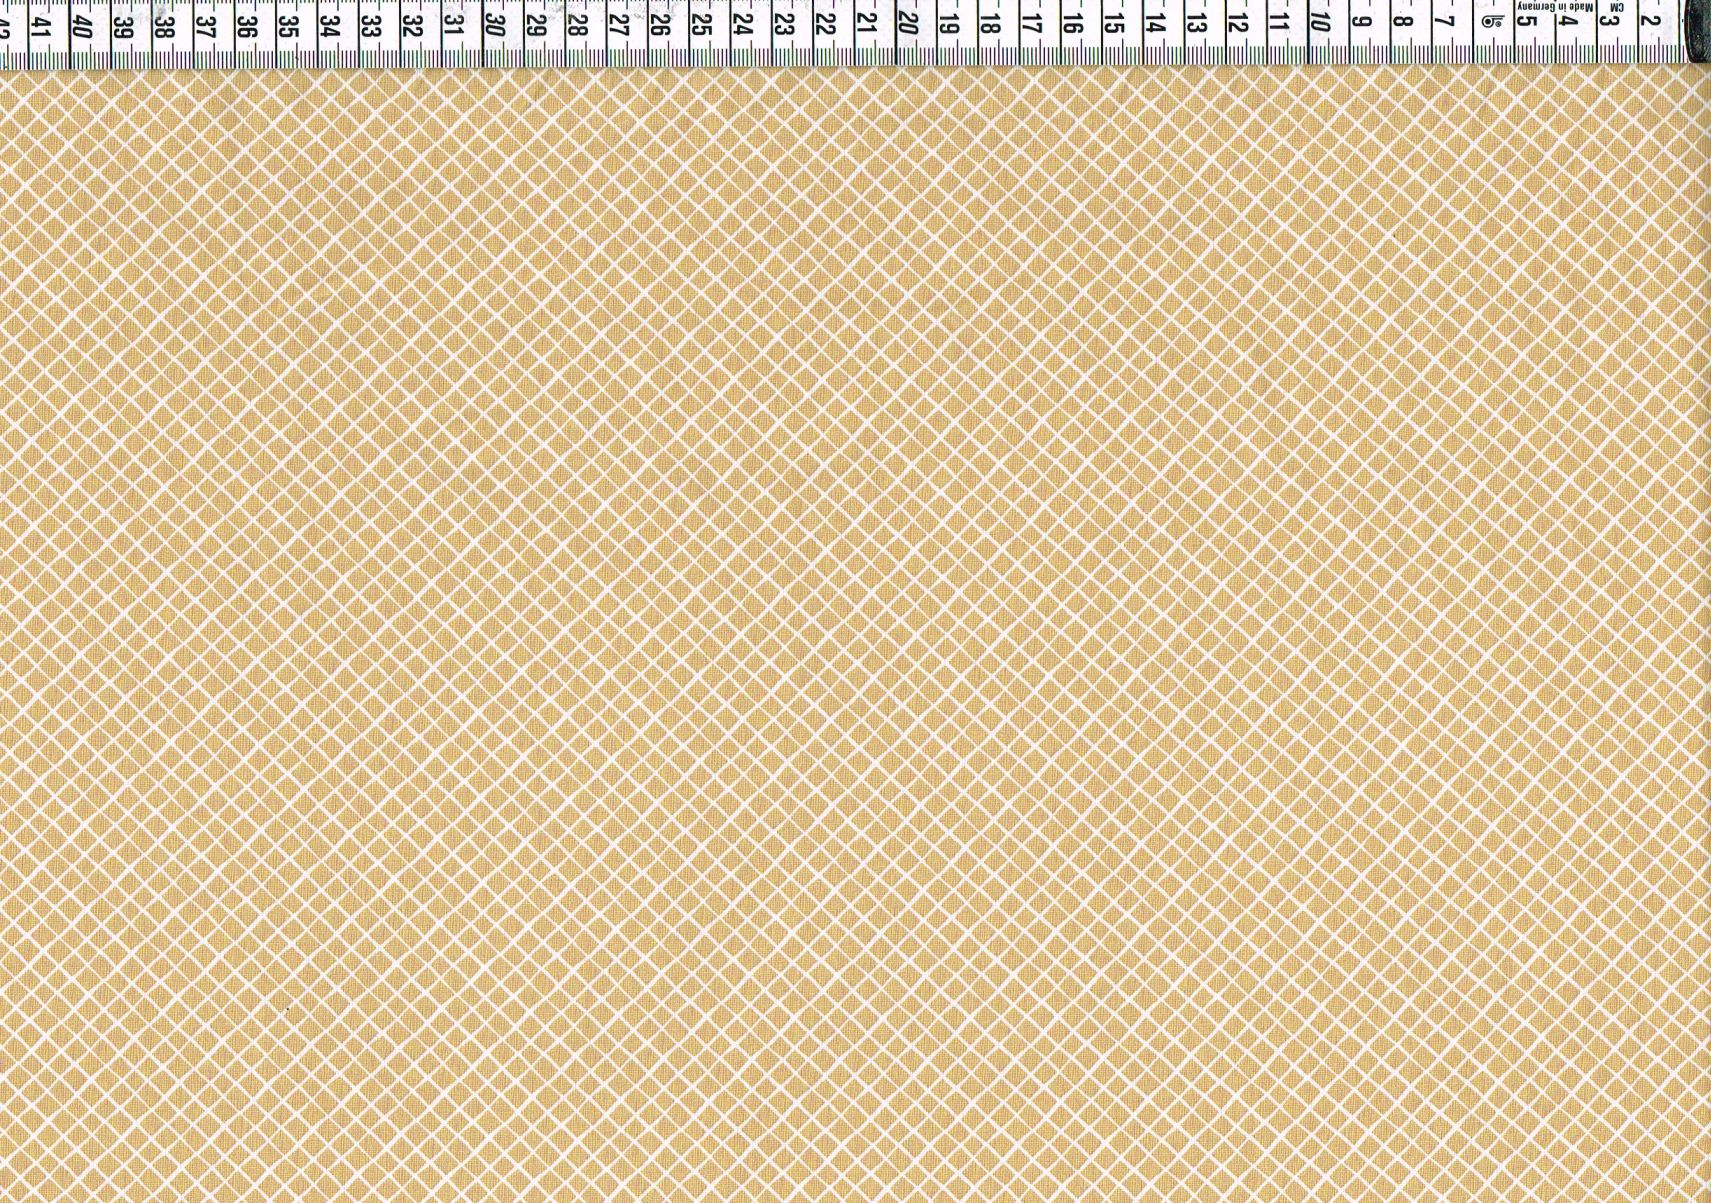 Baumwollgewebe - kleine Rauten braun-beige/weiß